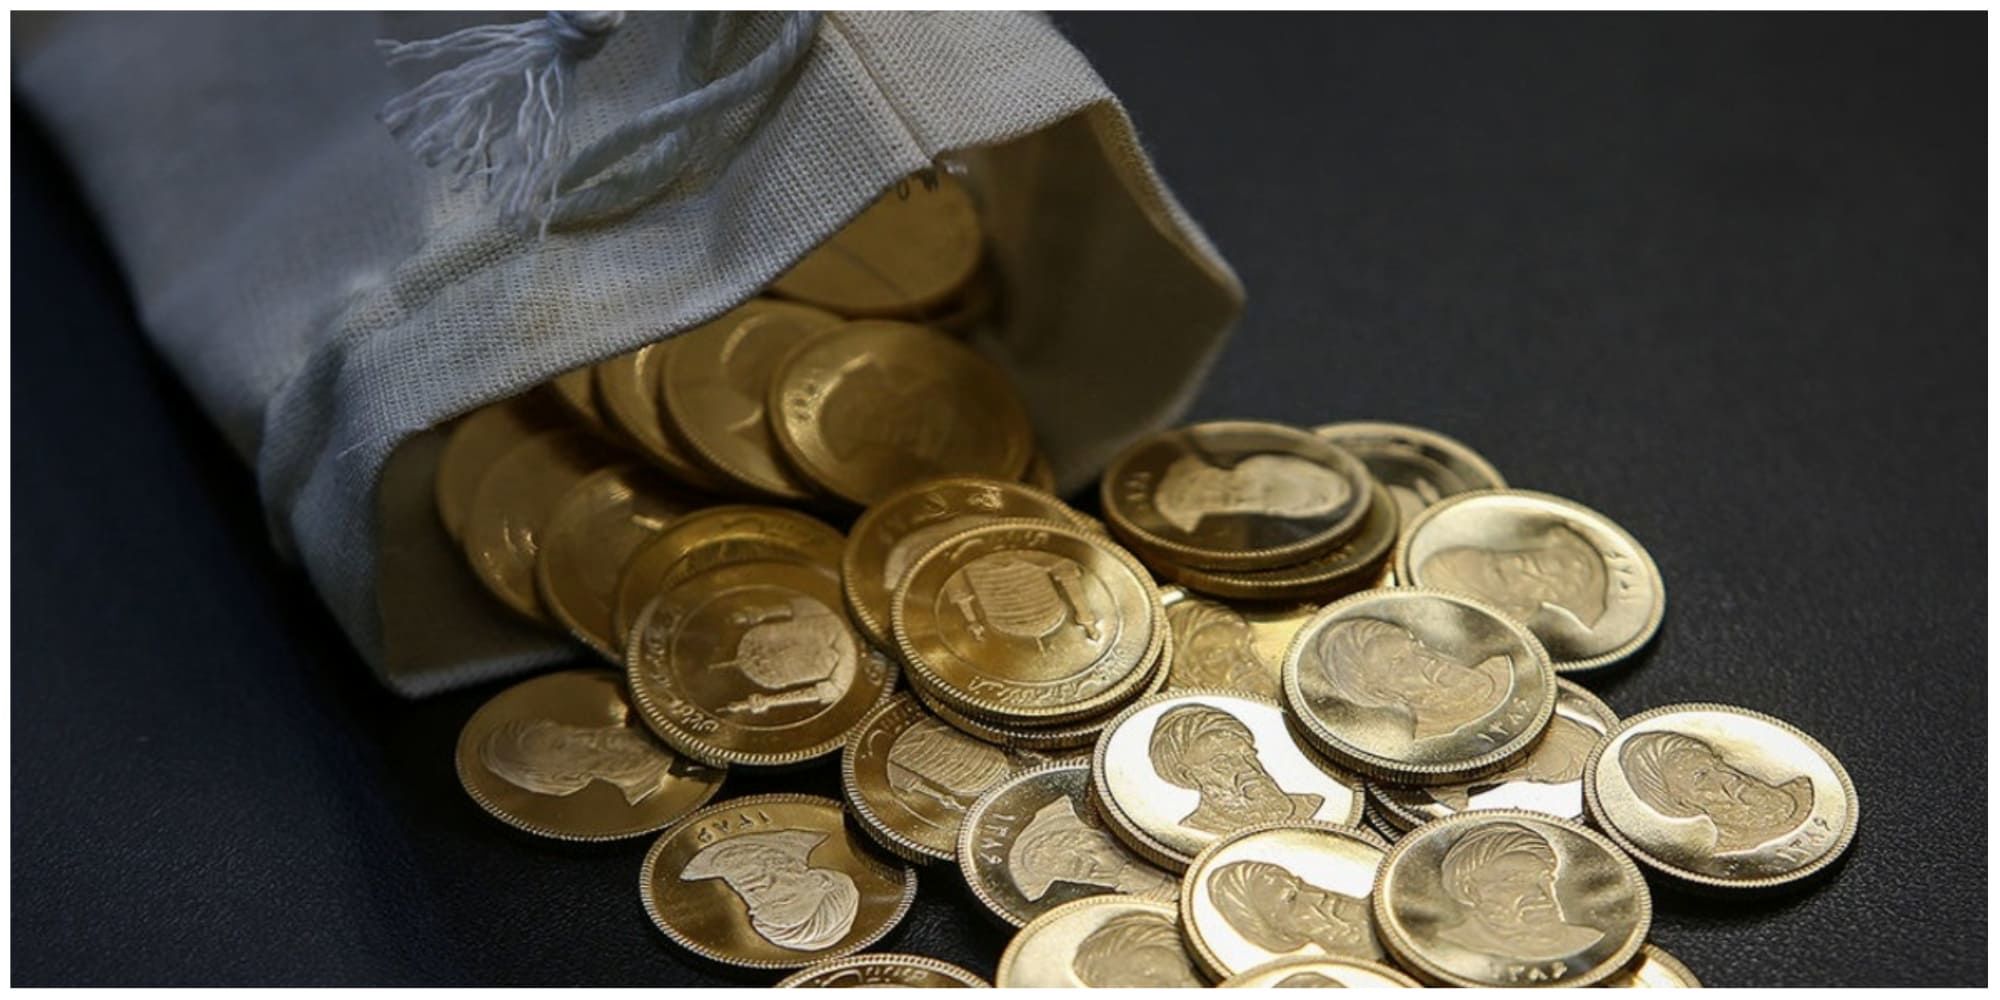 عقب نشینی شبانه در بازار سکه /پیش بینی قیمت سکه امروز